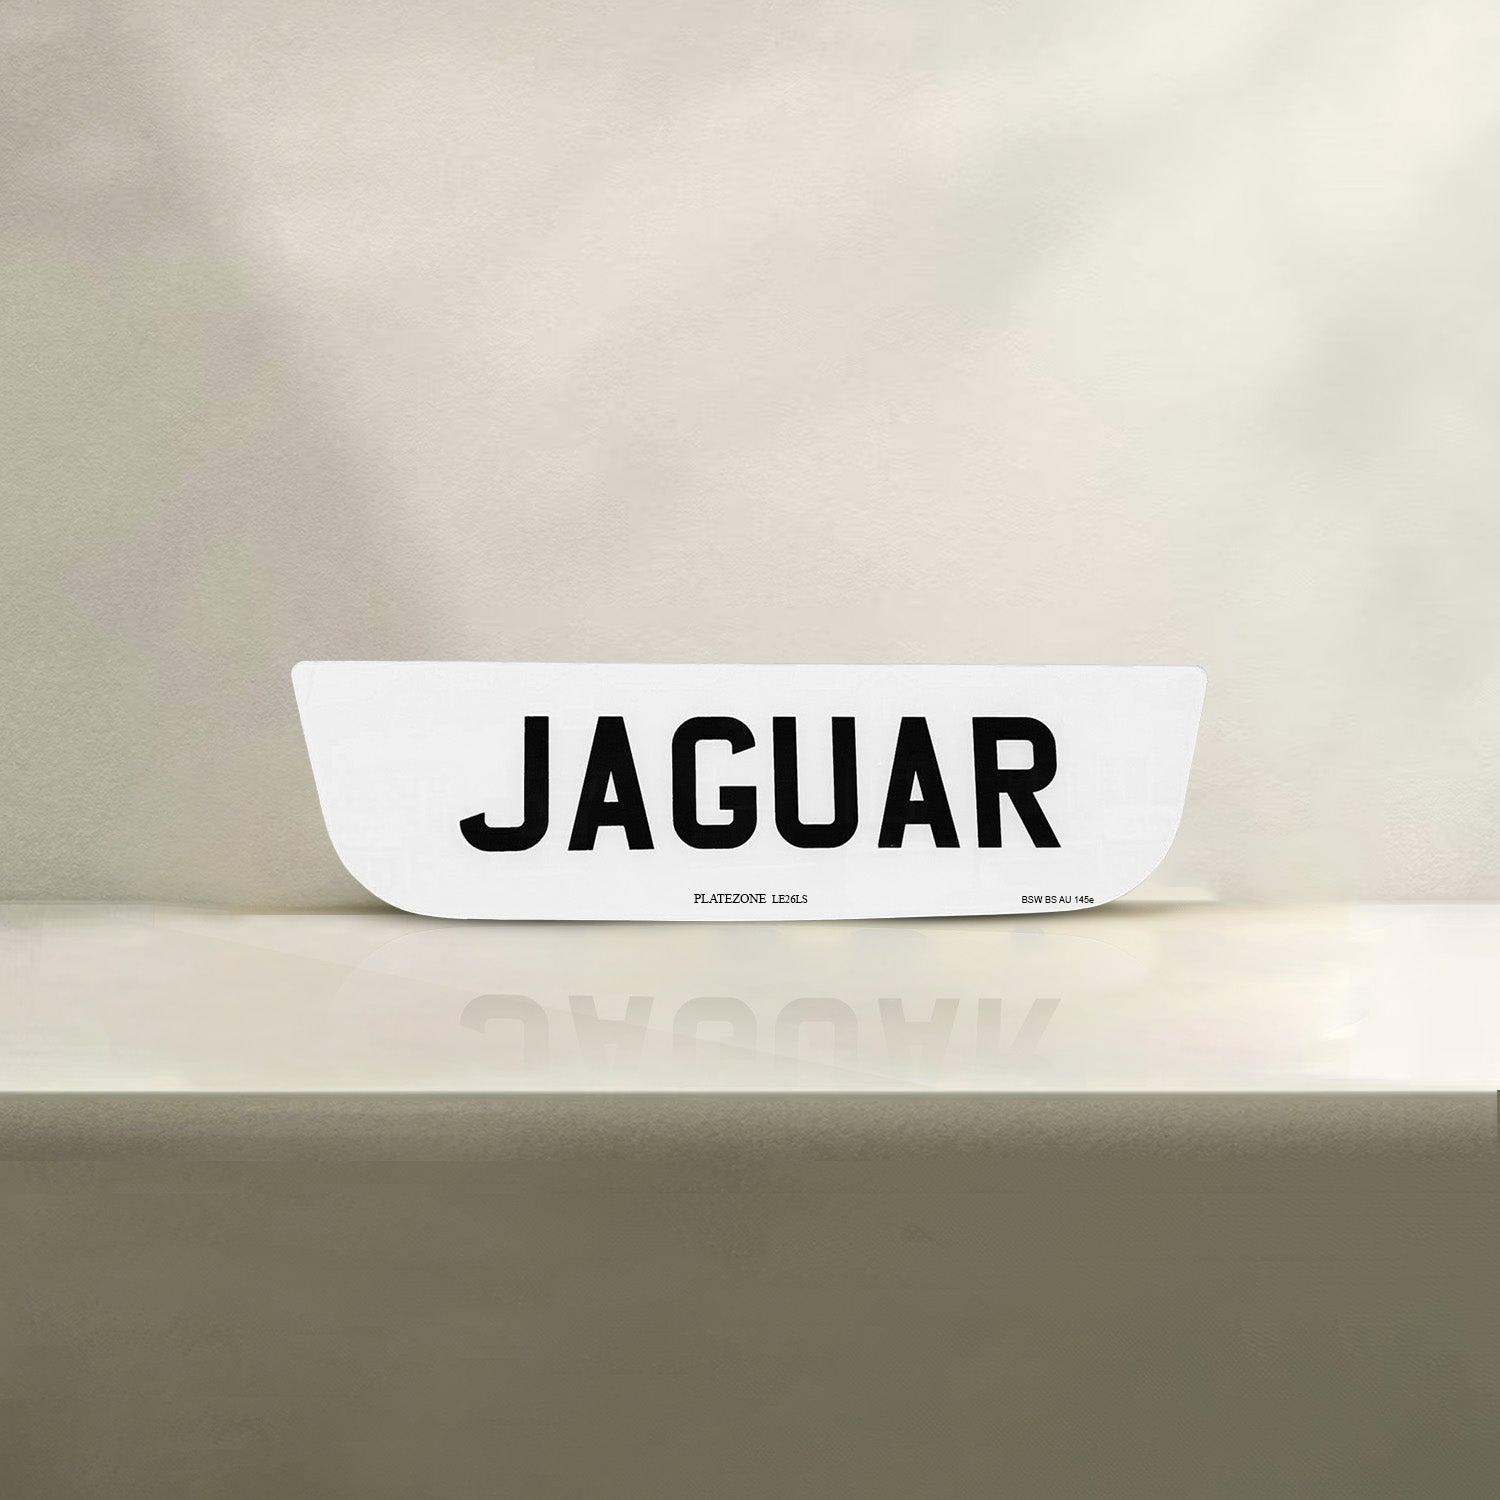 Jaguar Number Plate